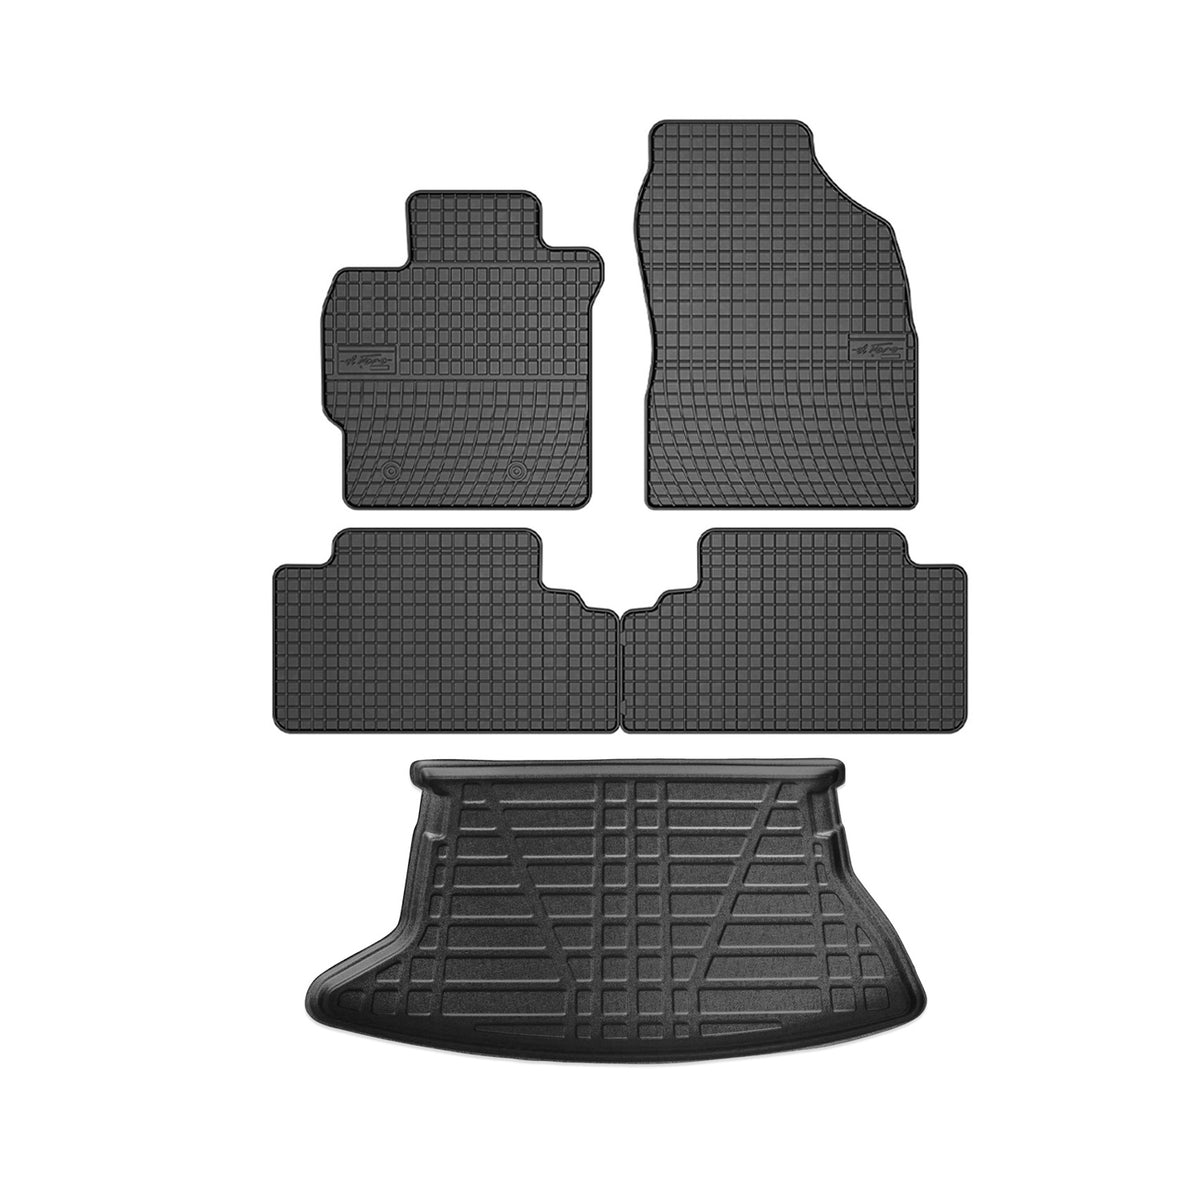 Fußmatten & Kofferraumwanne Set für Toyota Auris Schrägheck 2007-2012 Gummi 5x